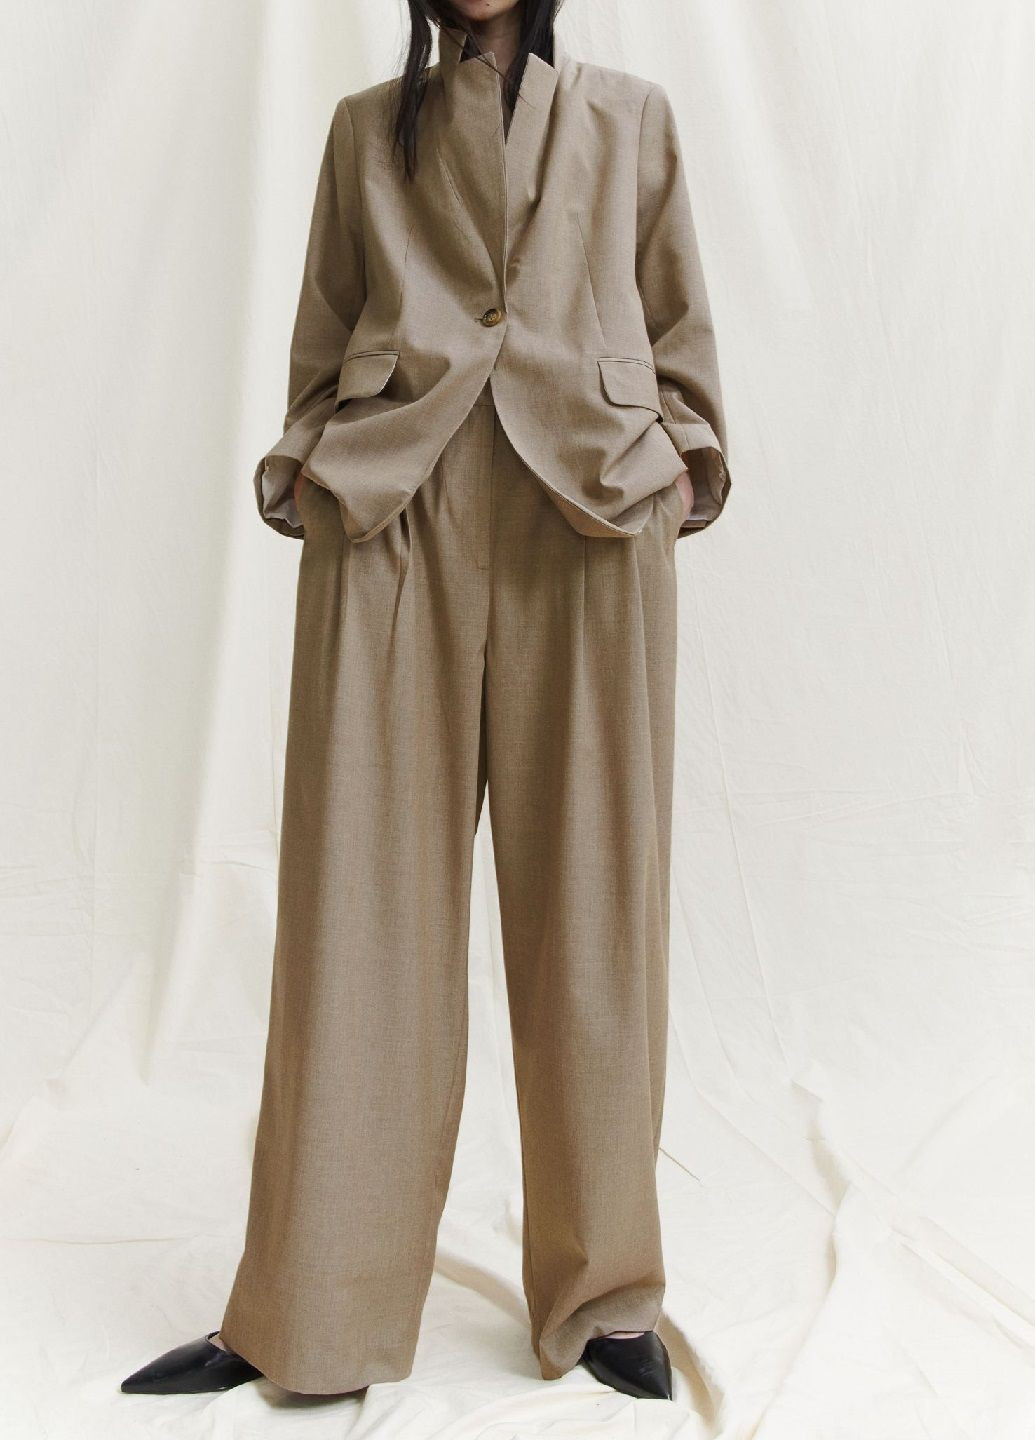 Темно-бежевые классические демисезонные брюки H&M